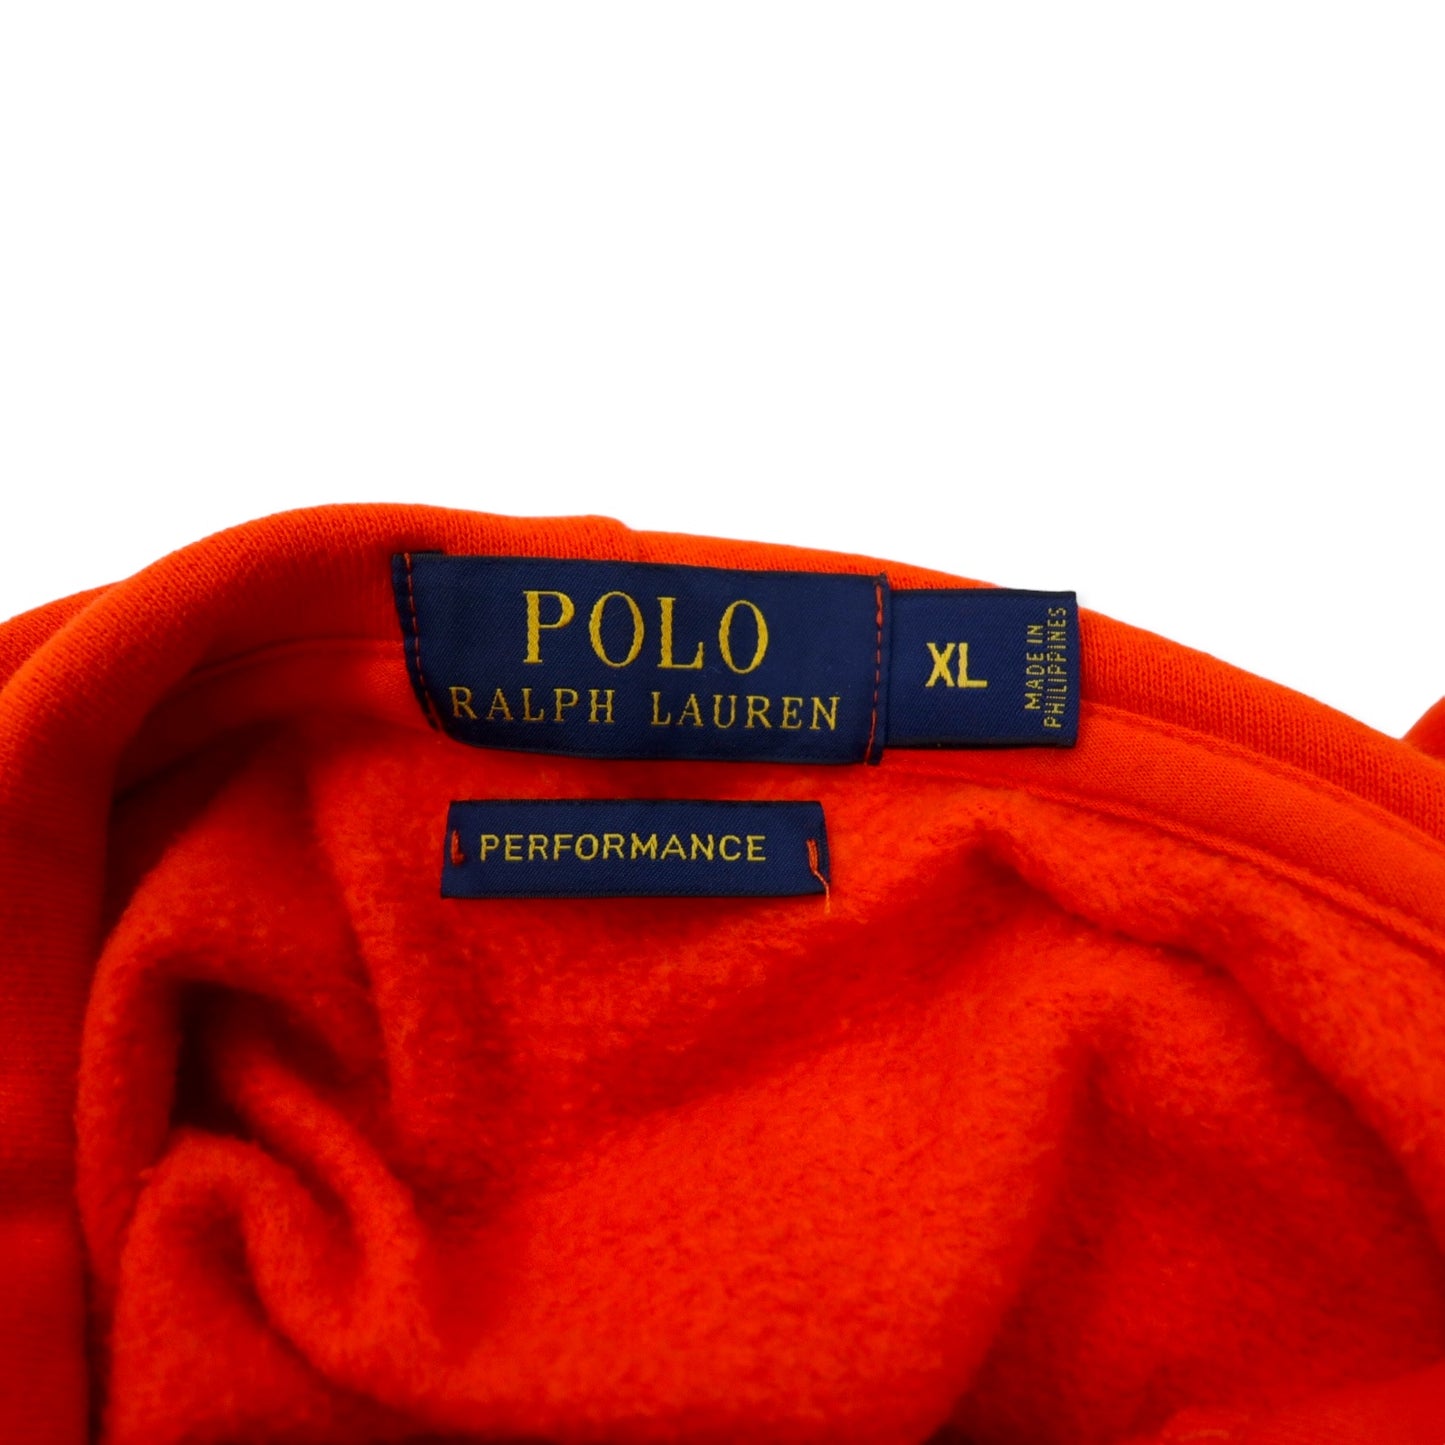 POLO RALPH LAUREN パフォーマンス プルオーバーパーカー XL オレンジ コットン 裏起毛 スモールポニー刺繍 PERFORMANCE ビッグサイズ